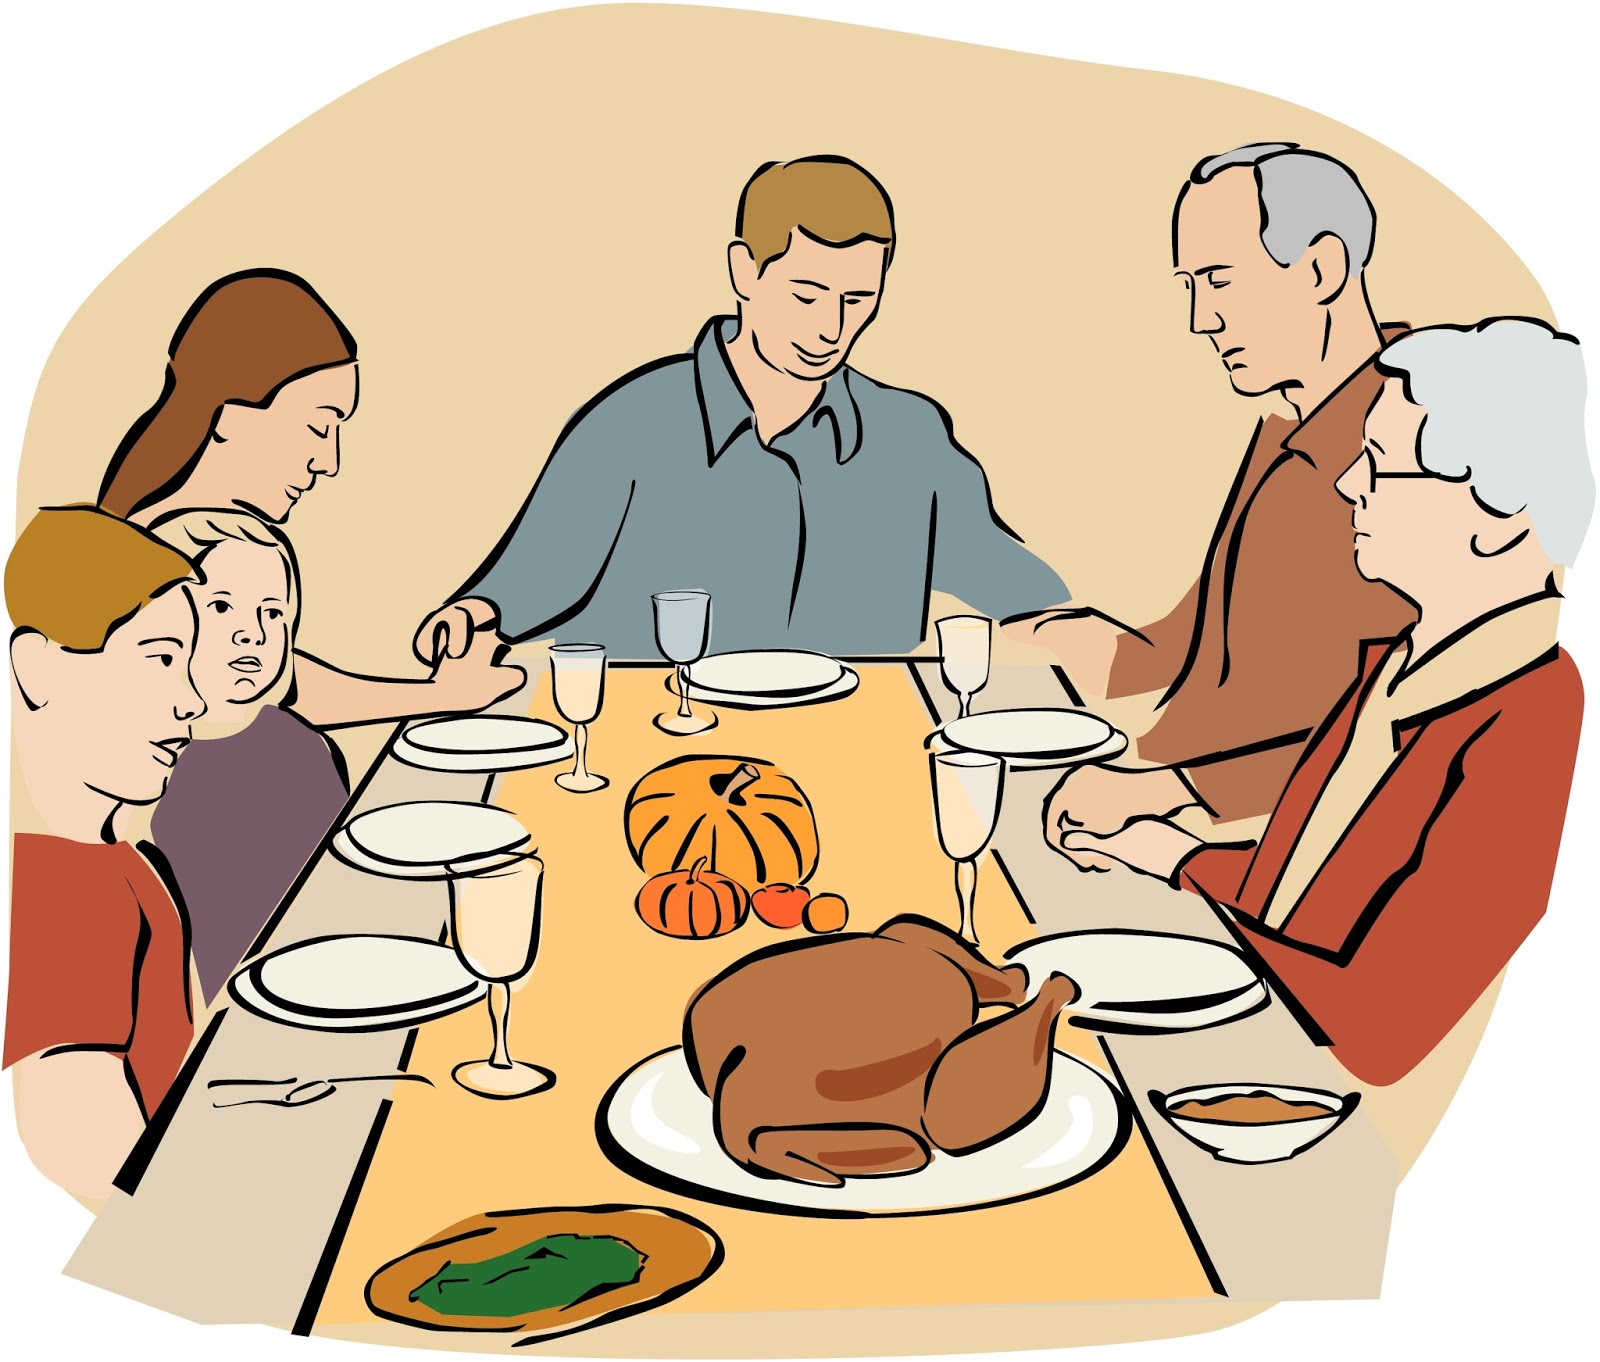 ... Thanksgiving dinner clipa - Thanksgiving Dinner Clipart